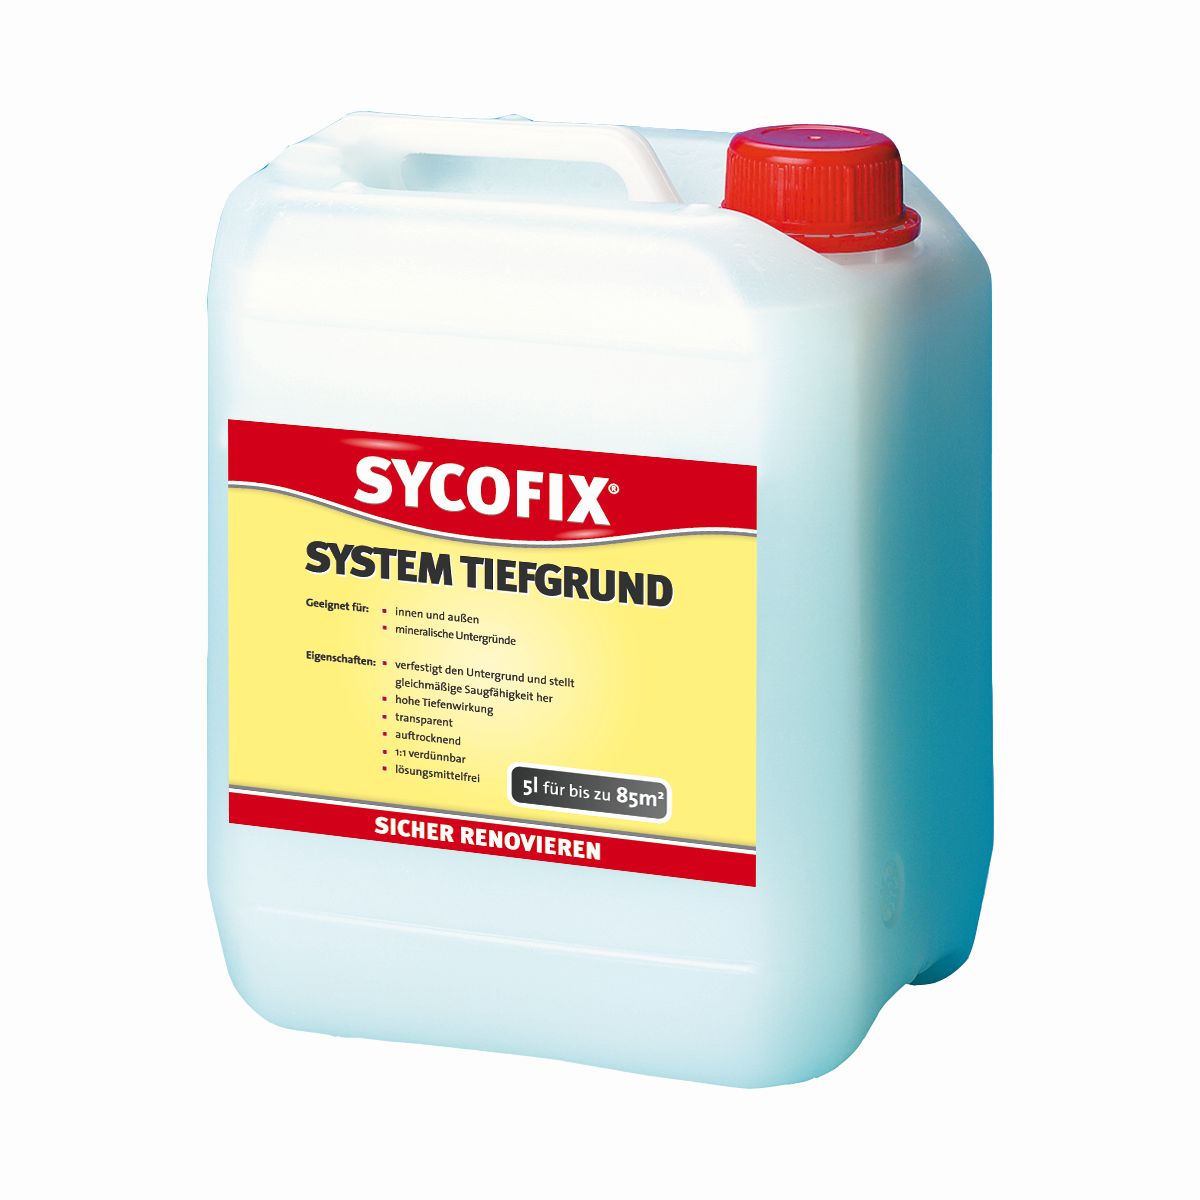 SYCOFIX ® System Tiefgrund LF 5 L